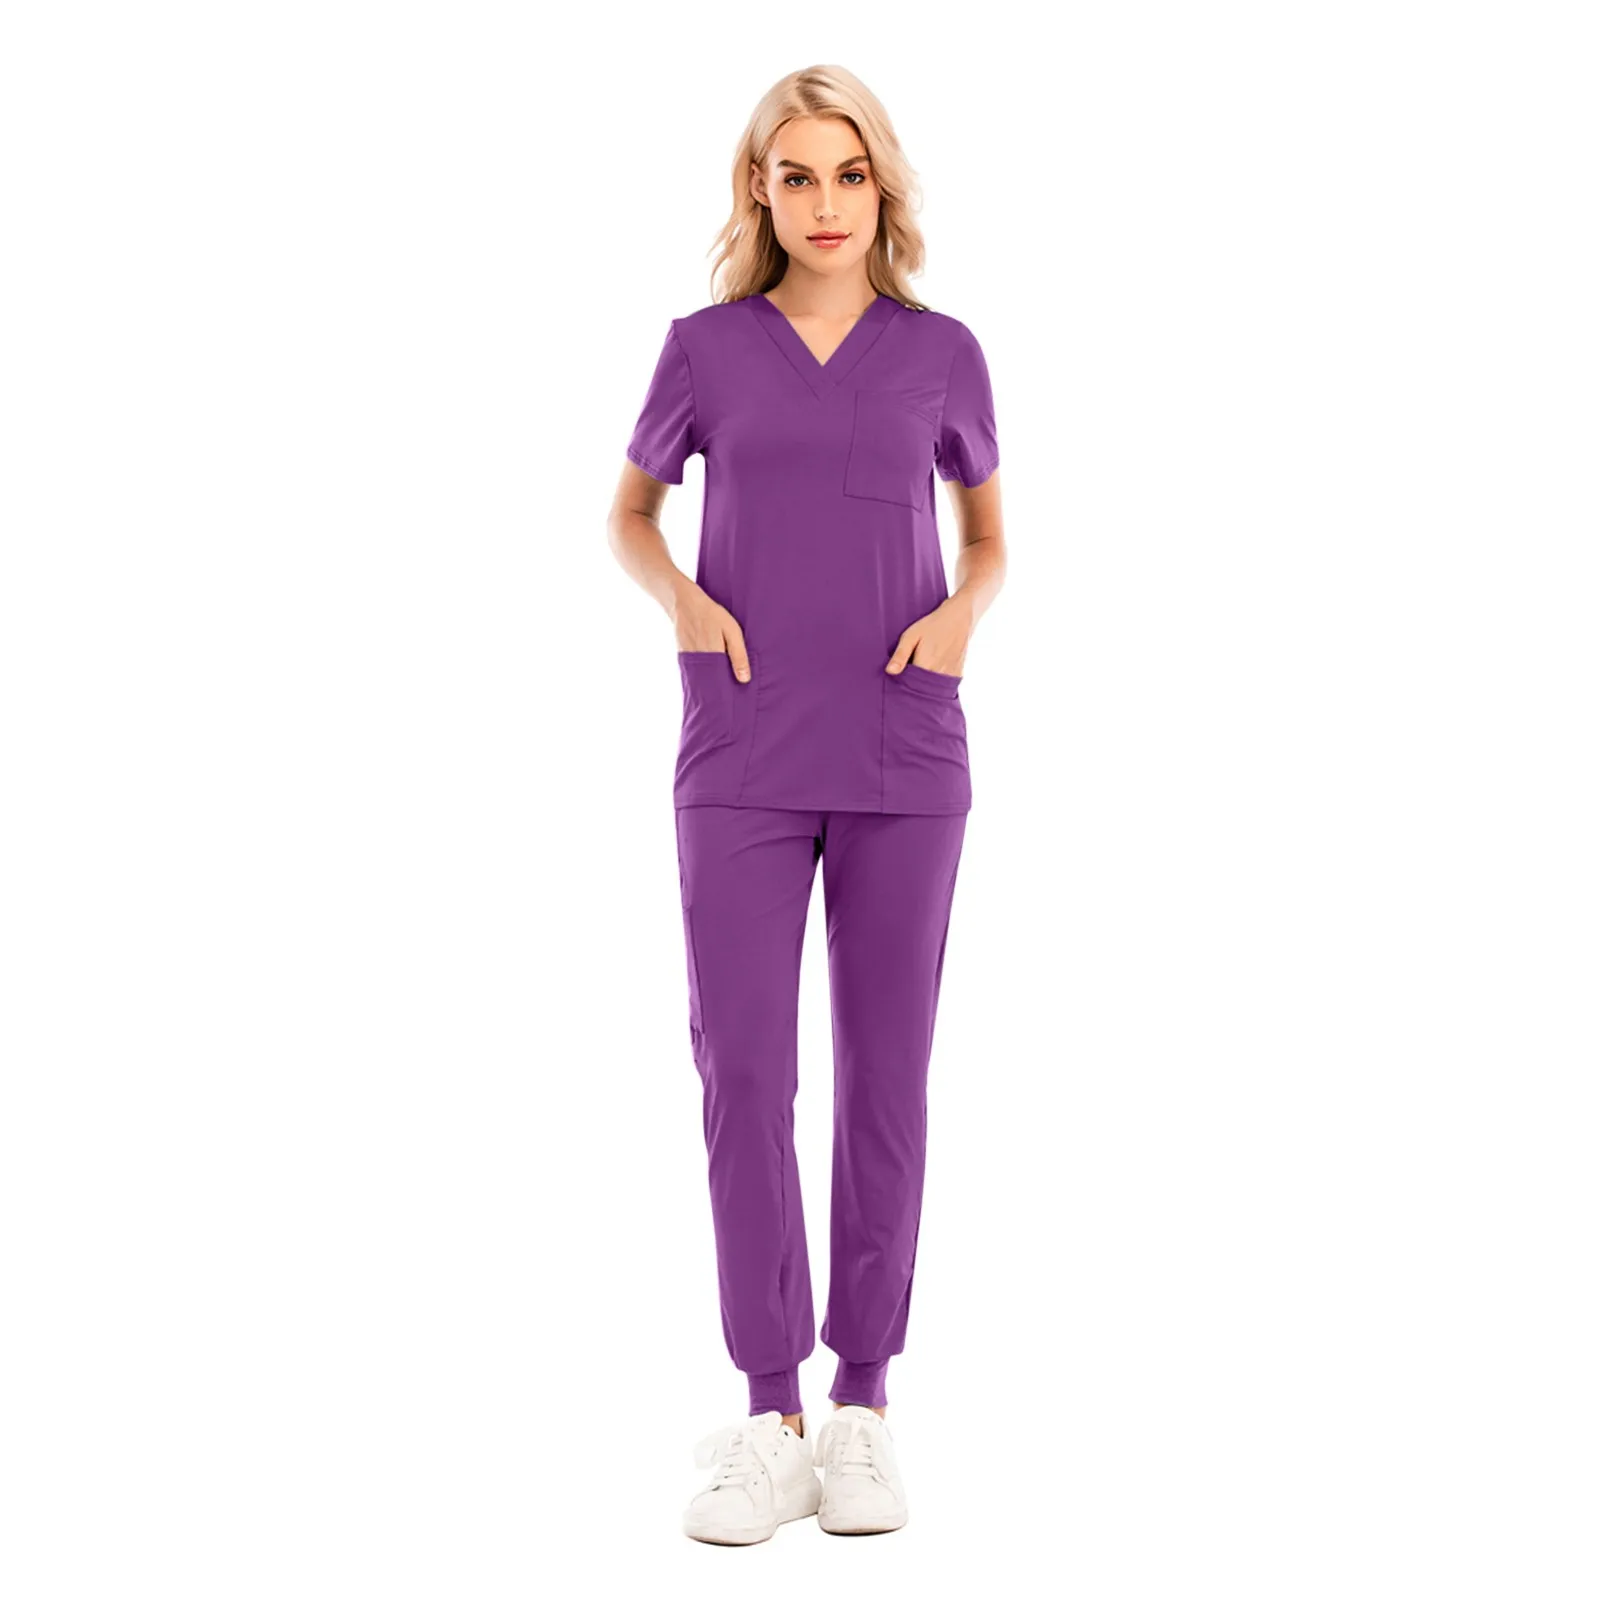 Многоцветная унисекс медицинская Униформа с коротким рукавом для медсестры, больницы, врачей, рабочая одежда, хирургическая униформа, наборы скрабов